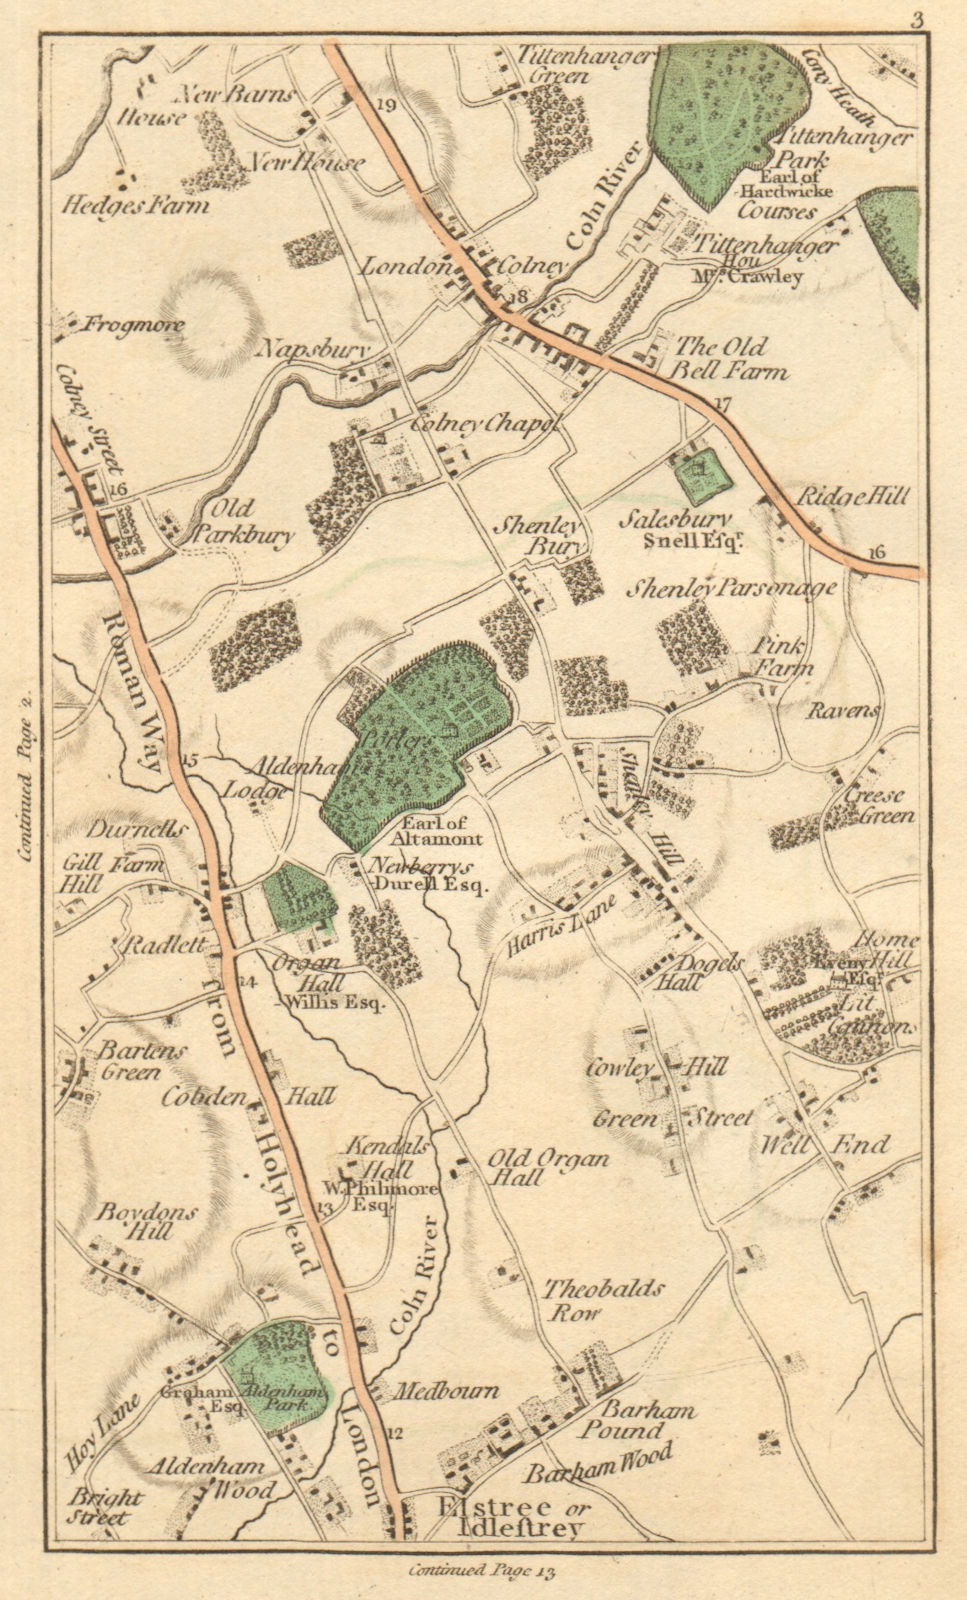 BOREHAMWOOD. Elstree,London Colney Street,St Albans,Radlett,Shenley 1811 map